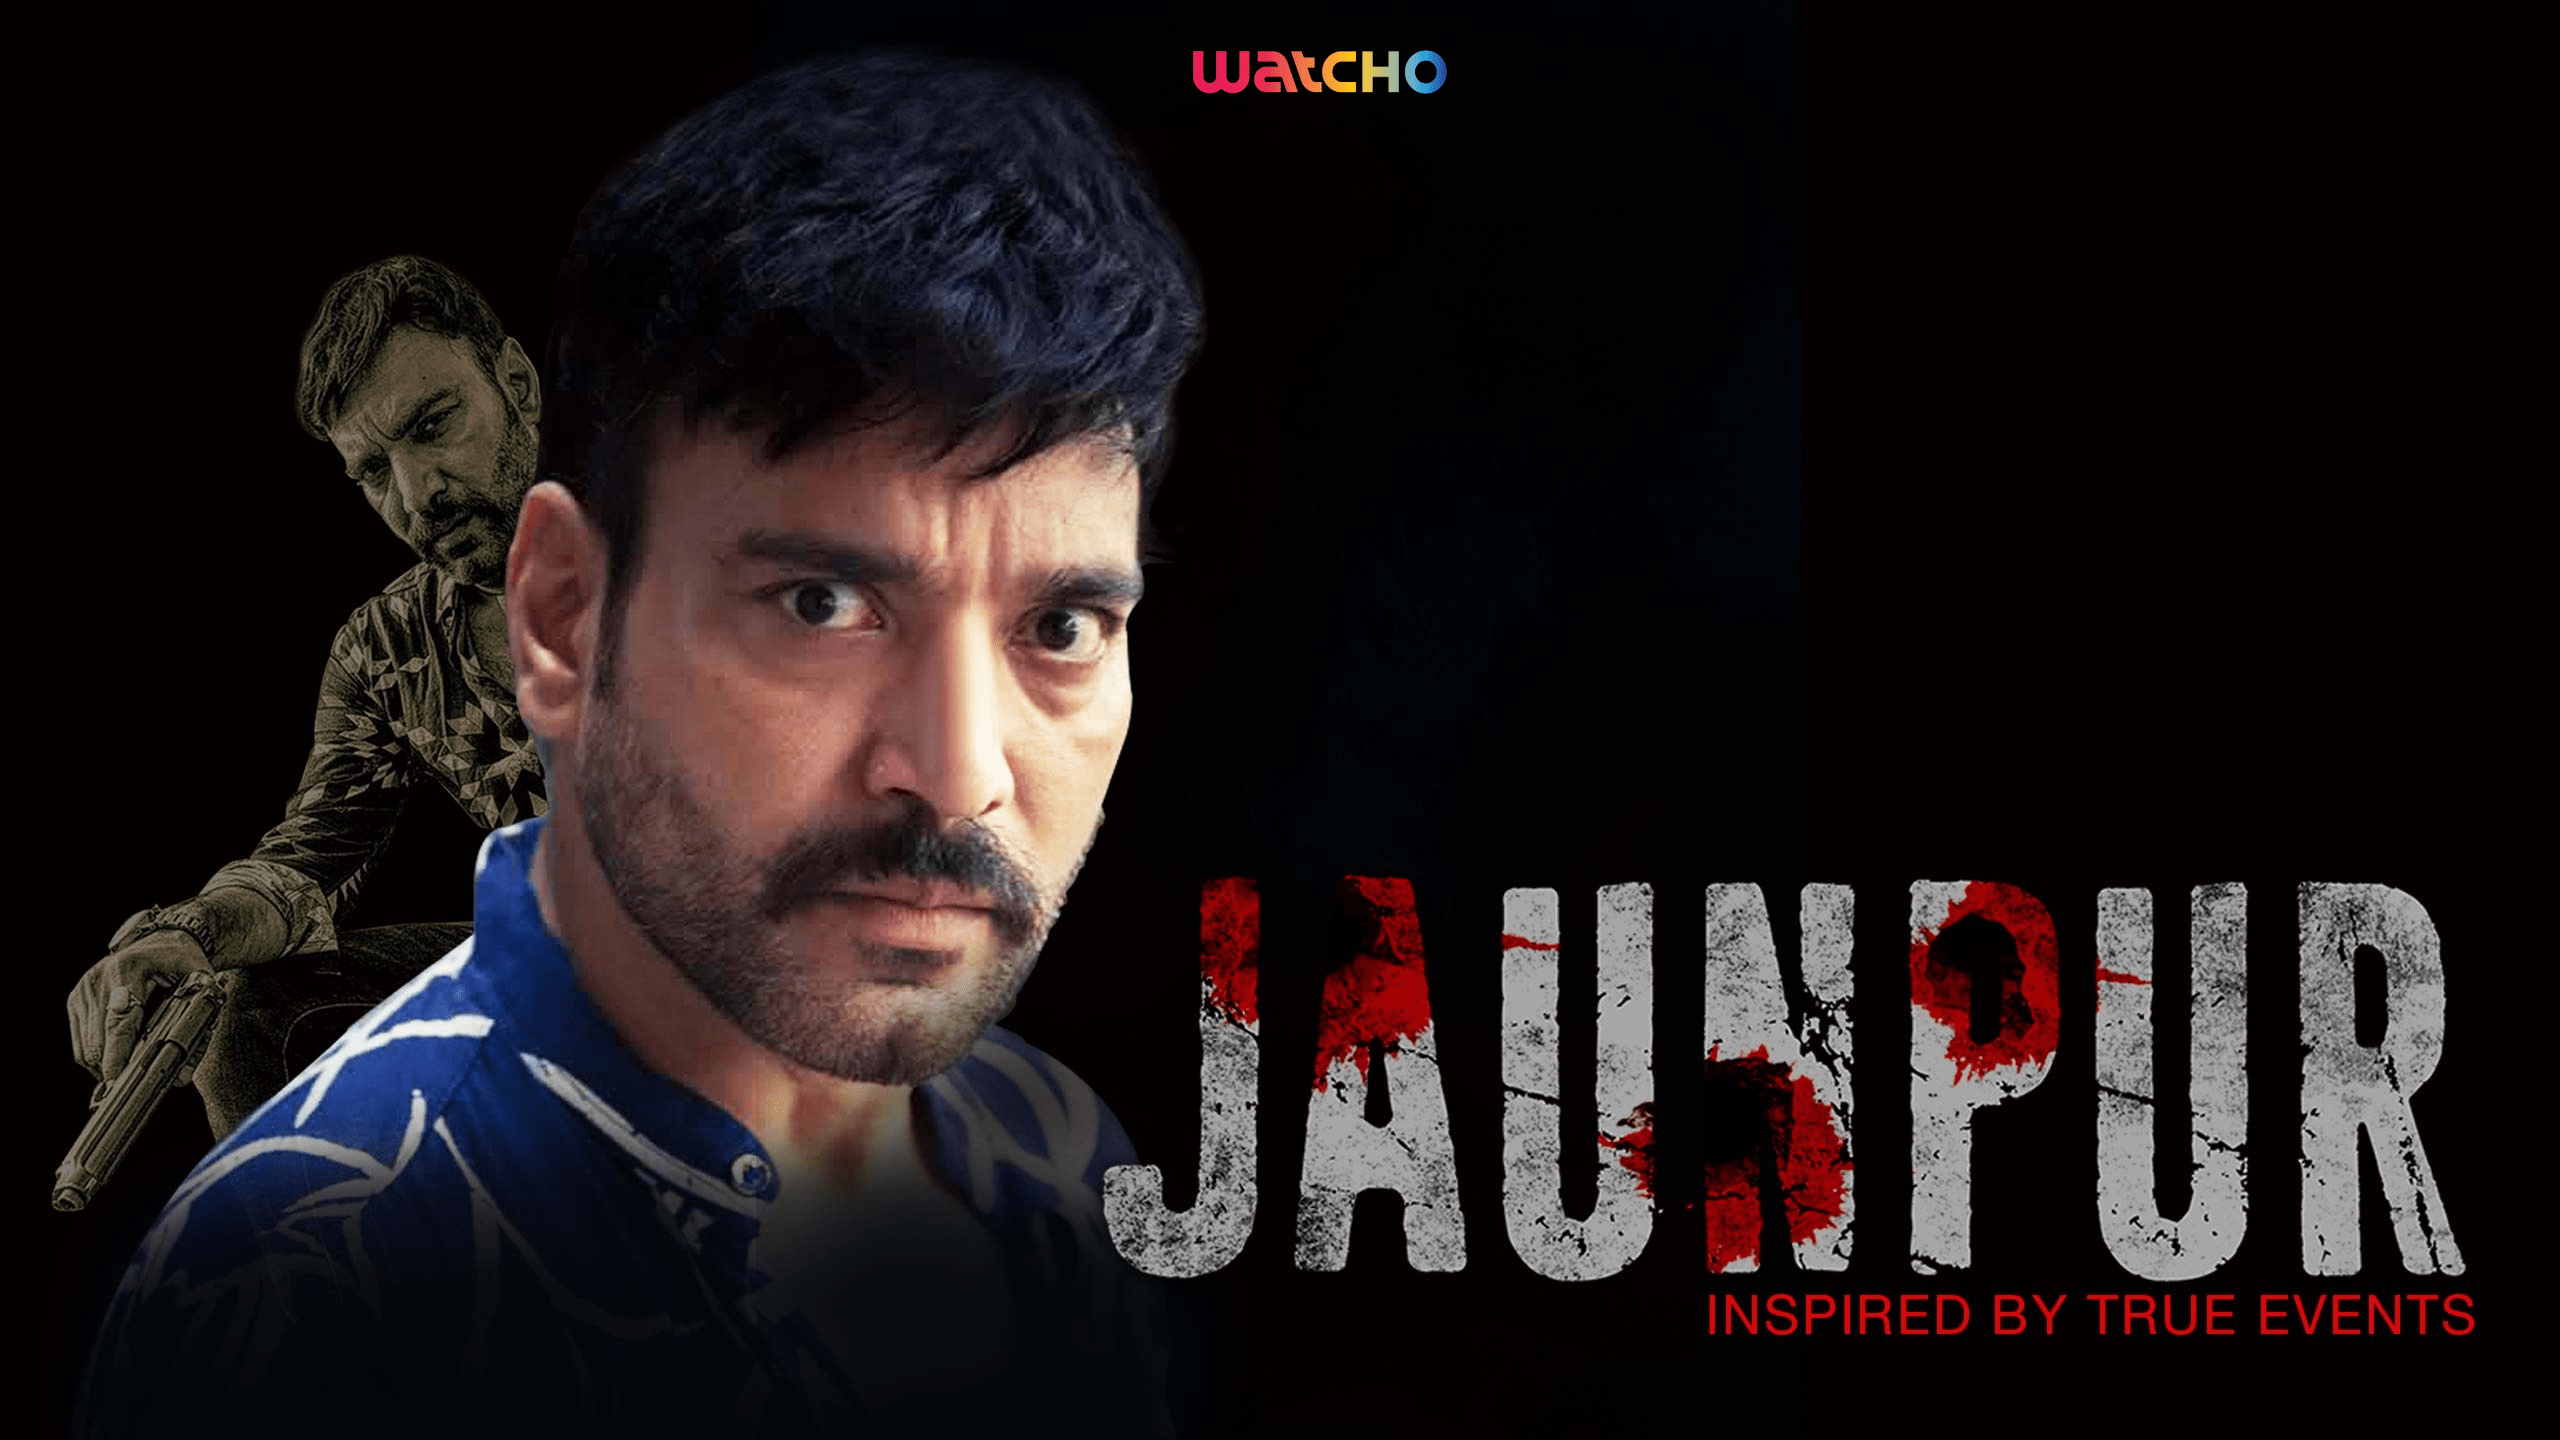 Jaunpur